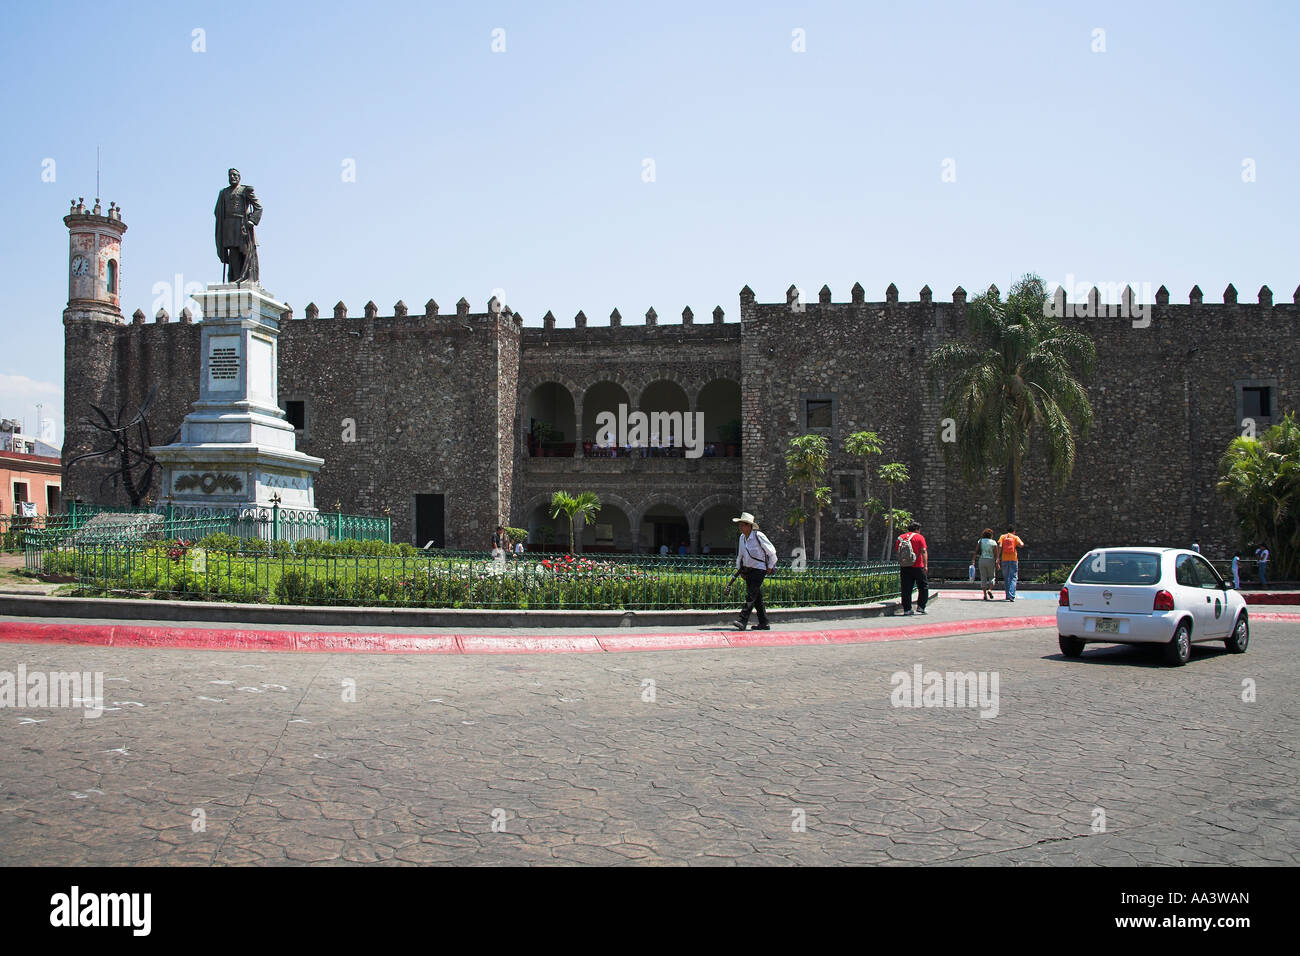 Palacio de Cortes, Cortes Palace, Plaza de Armas, Zocalo, Cuernavaca, Morelos State, Mexico Stock Photo